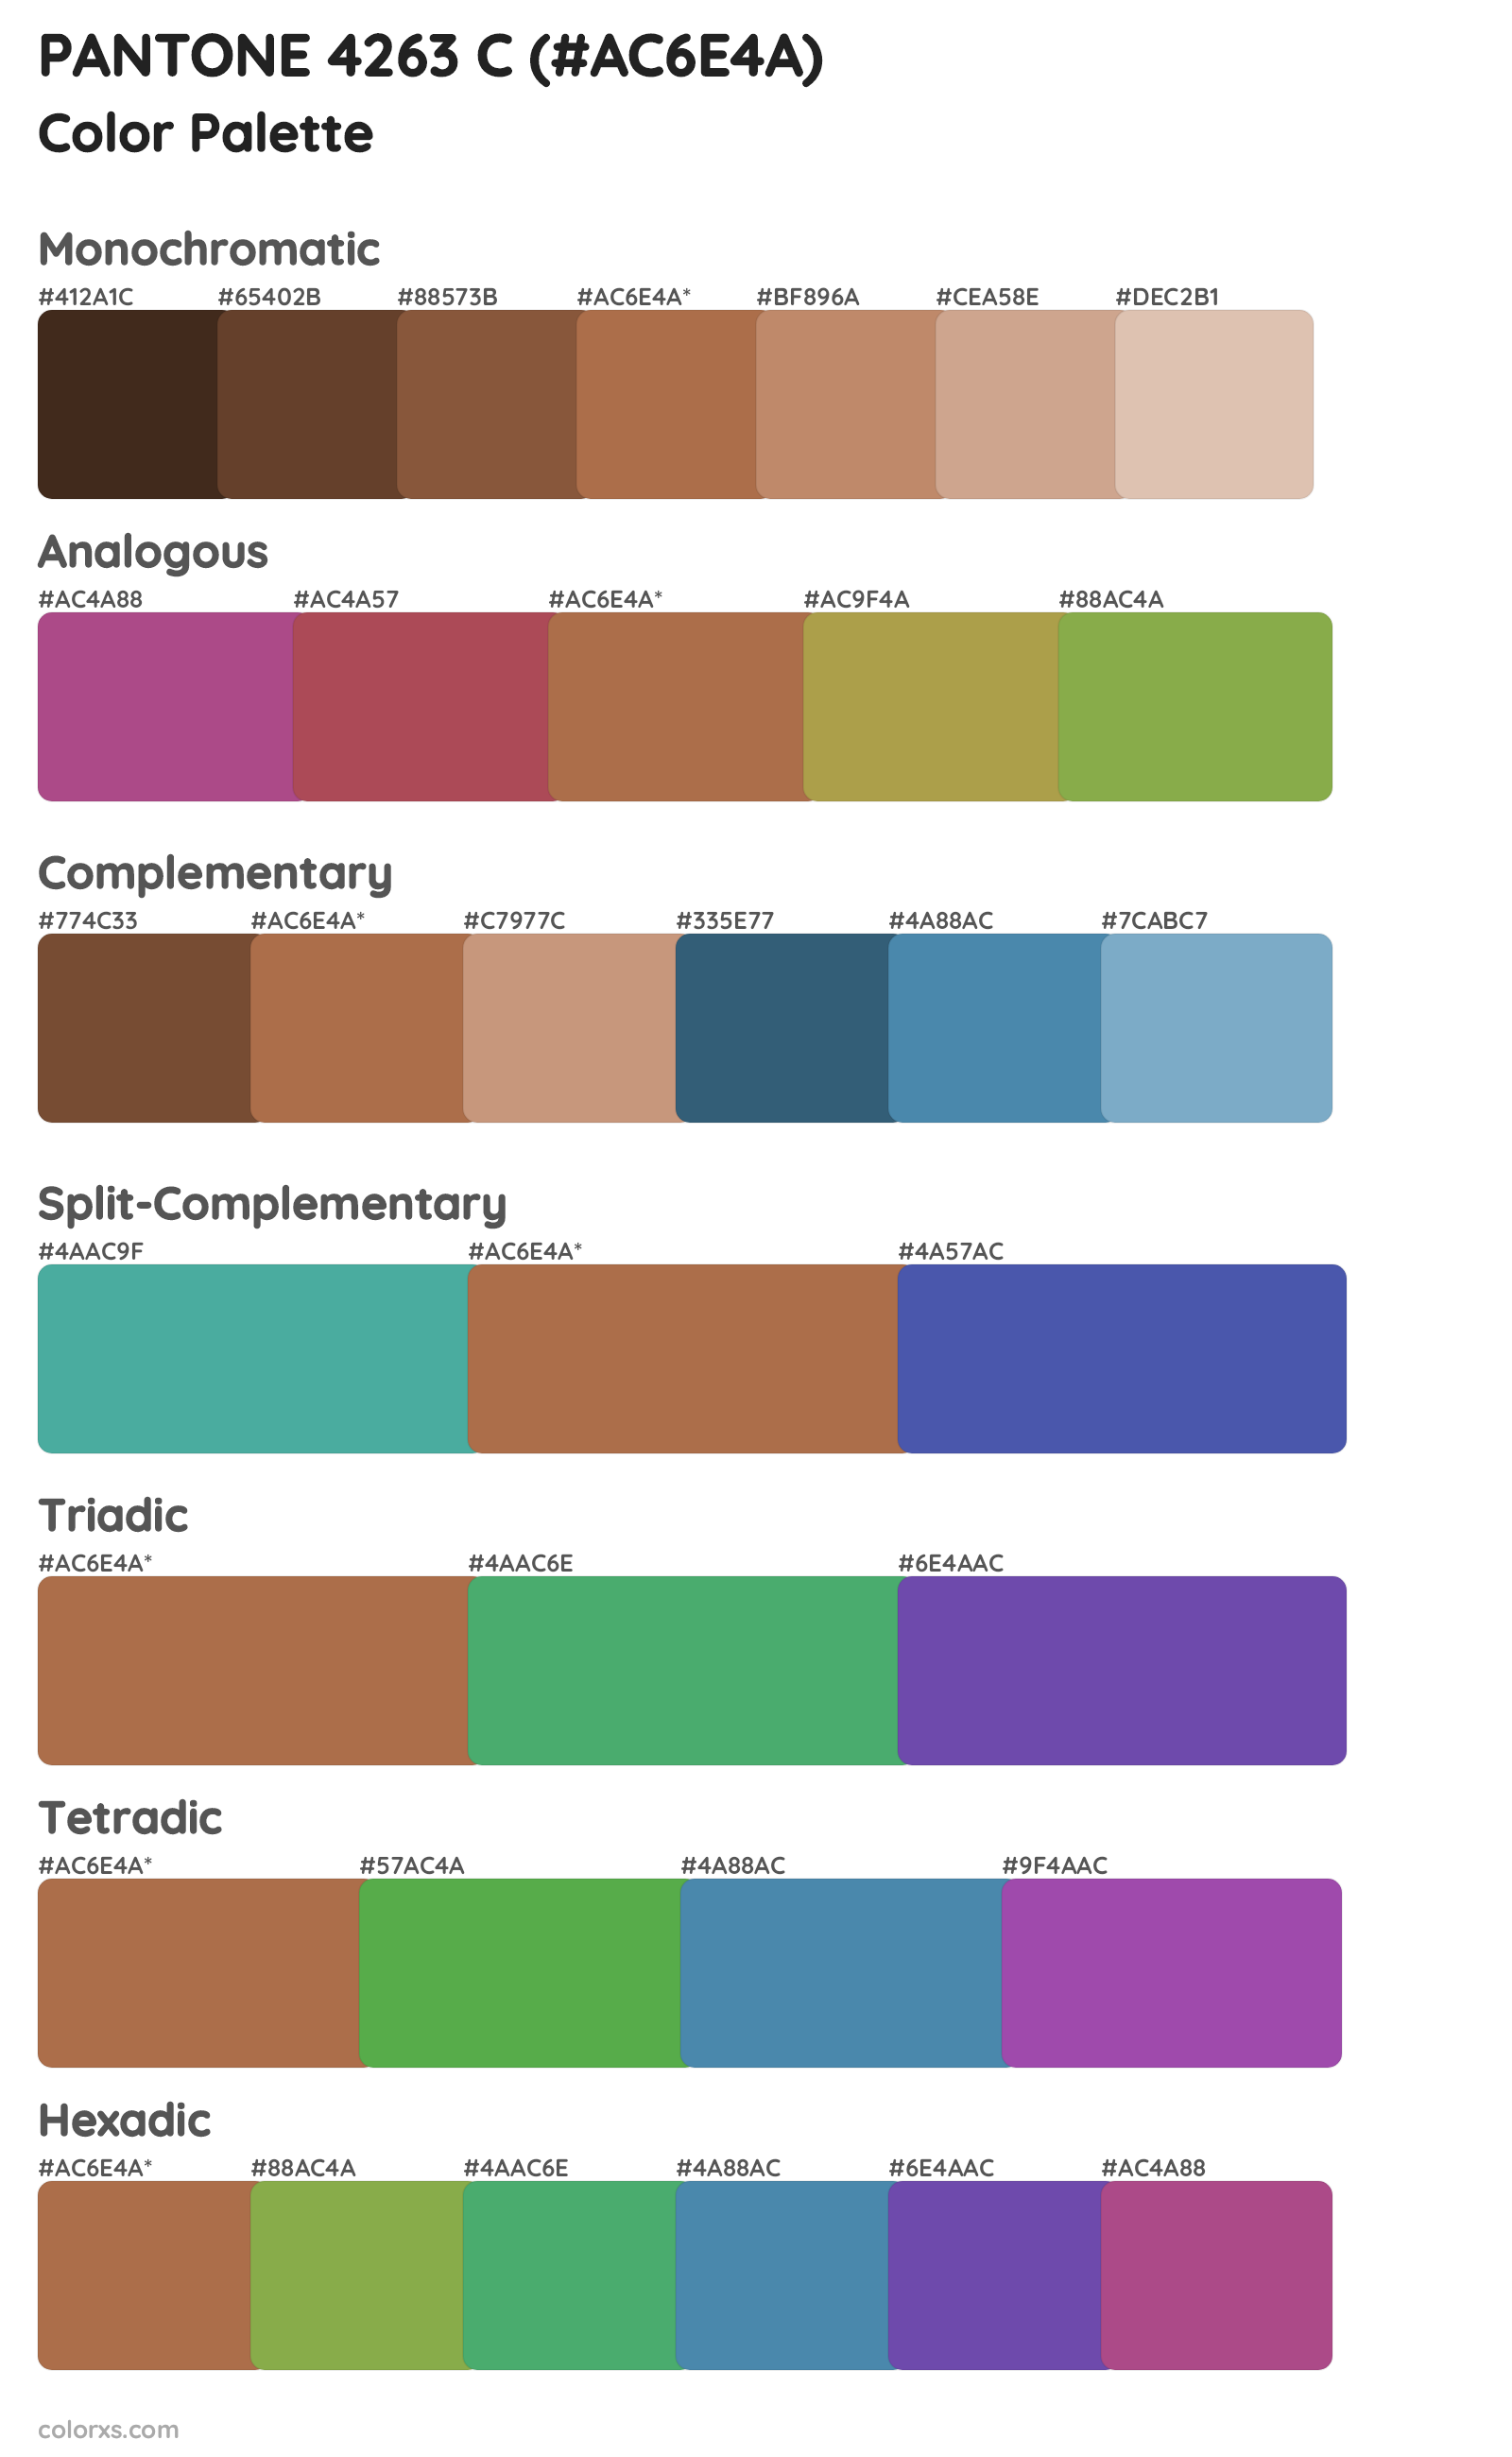 PANTONE 4263 C Color Scheme Palettes